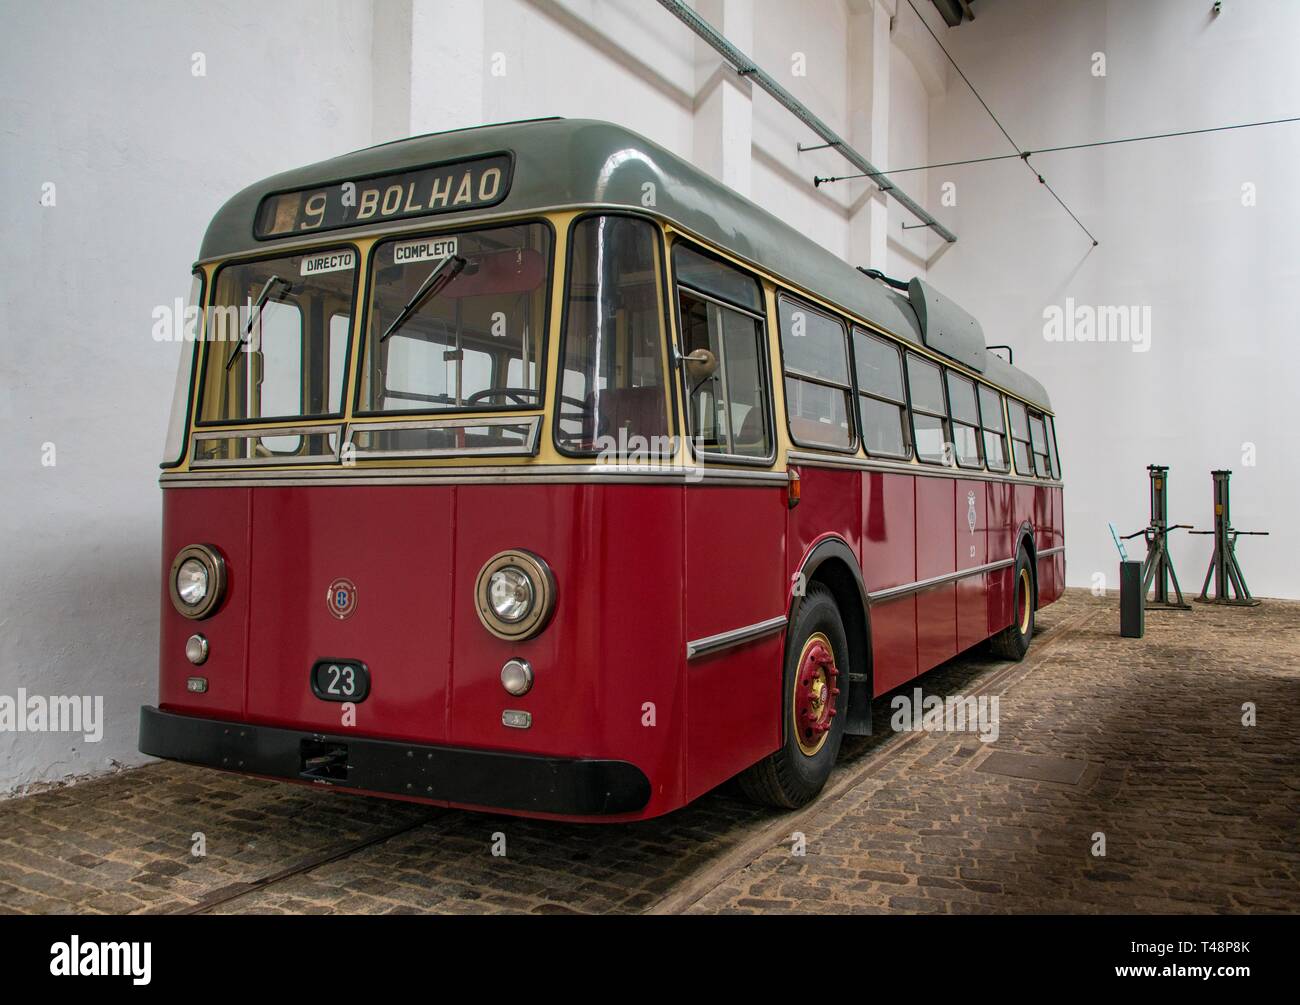 Historical red bus, tram museum, Museu do Carro Electrico da Cidade do Porto, Porto, Portugal Stock Photo